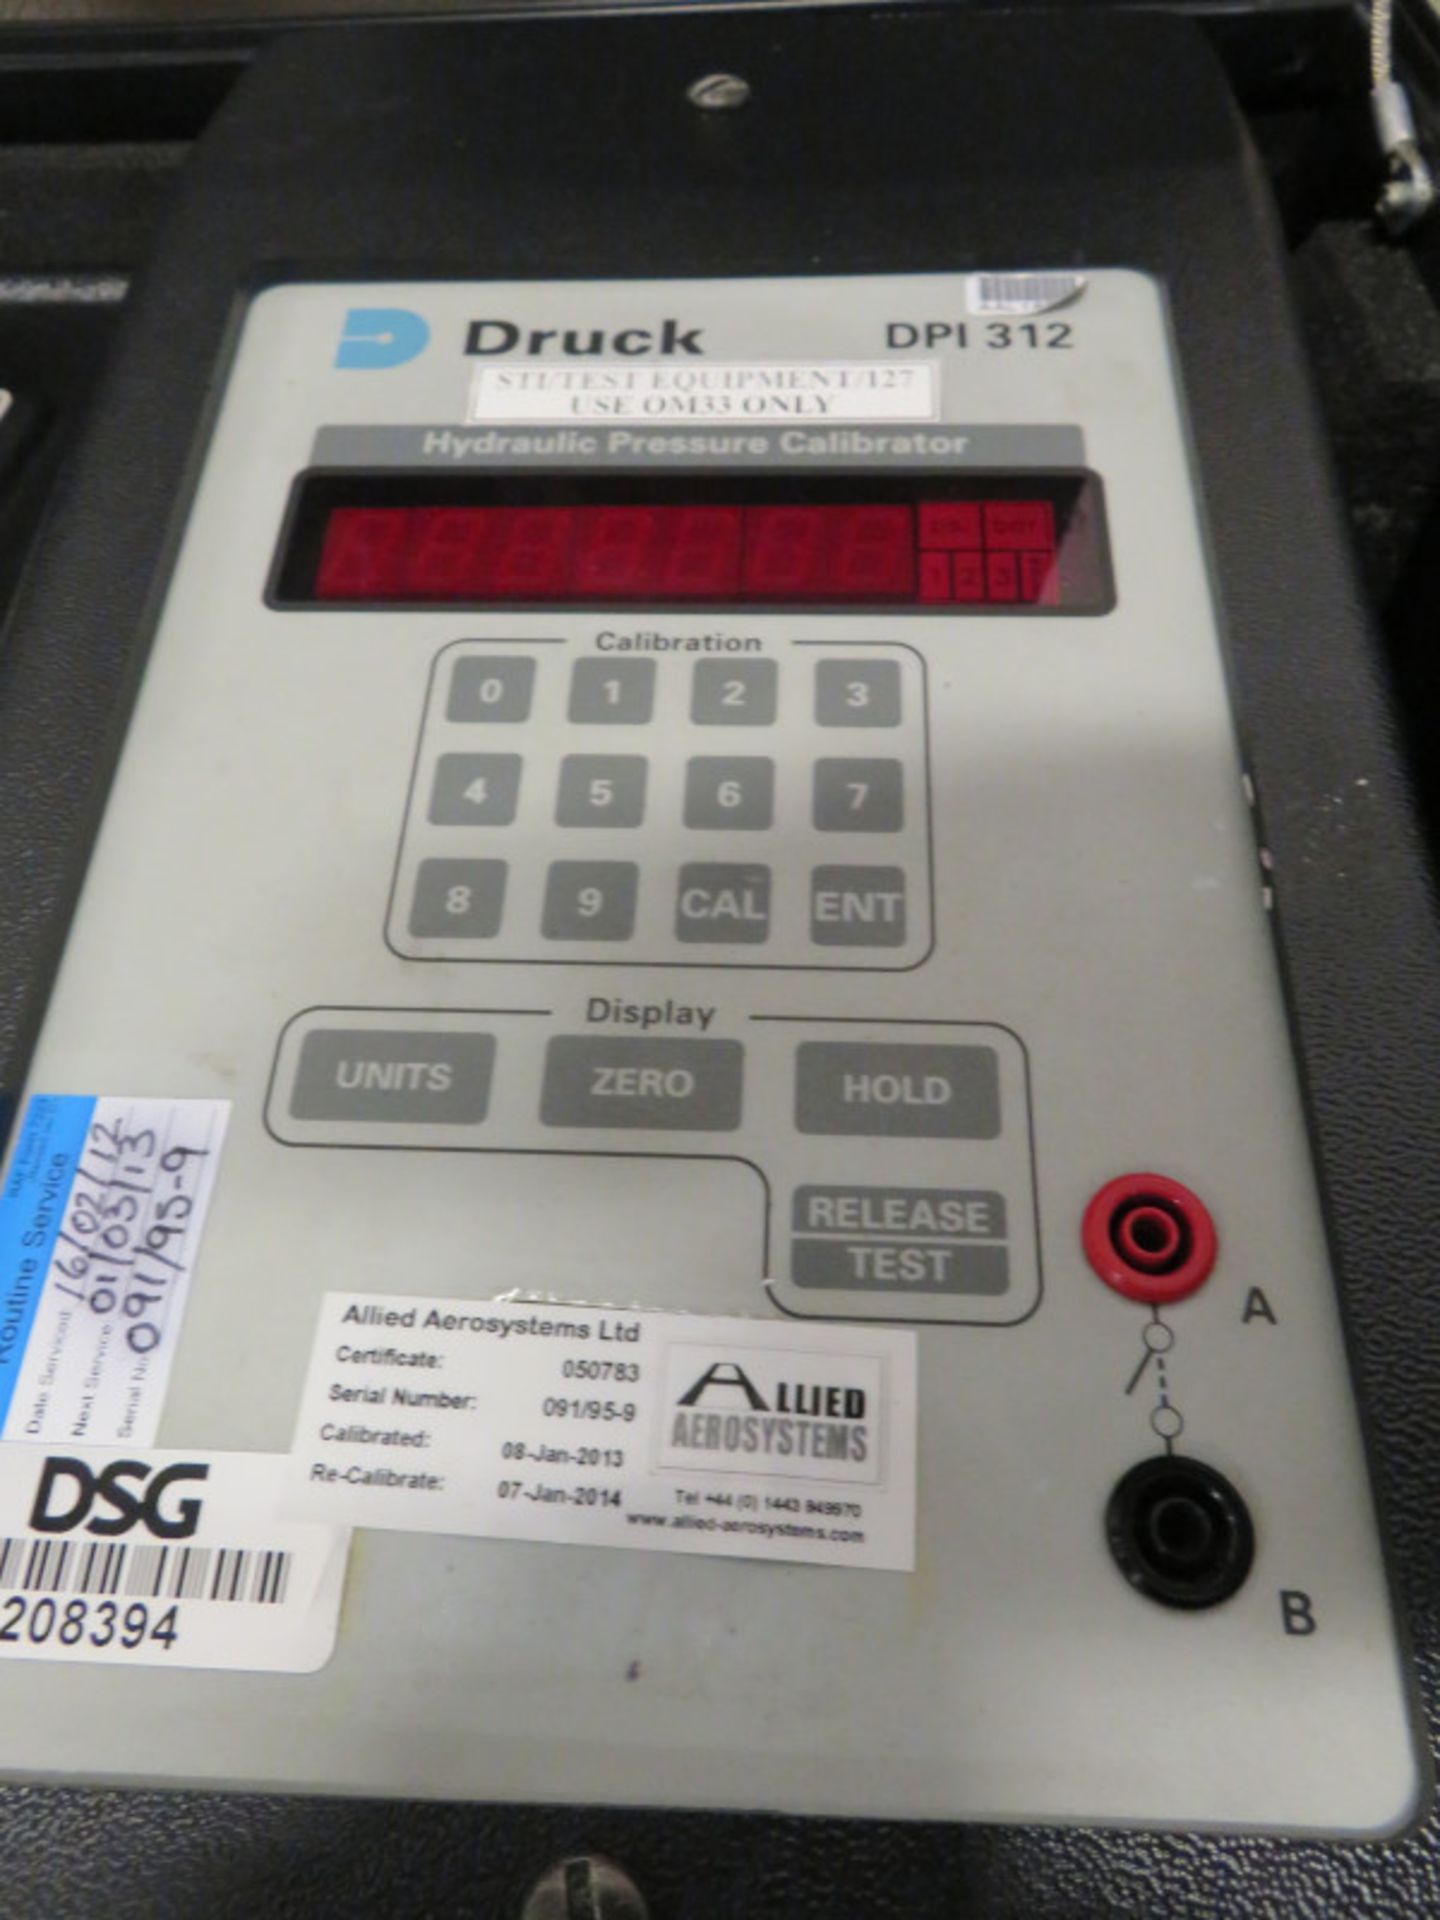 Druck DPI 312 Hydraulic Pressure Calibrator Unit In A Case - Image 3 of 3